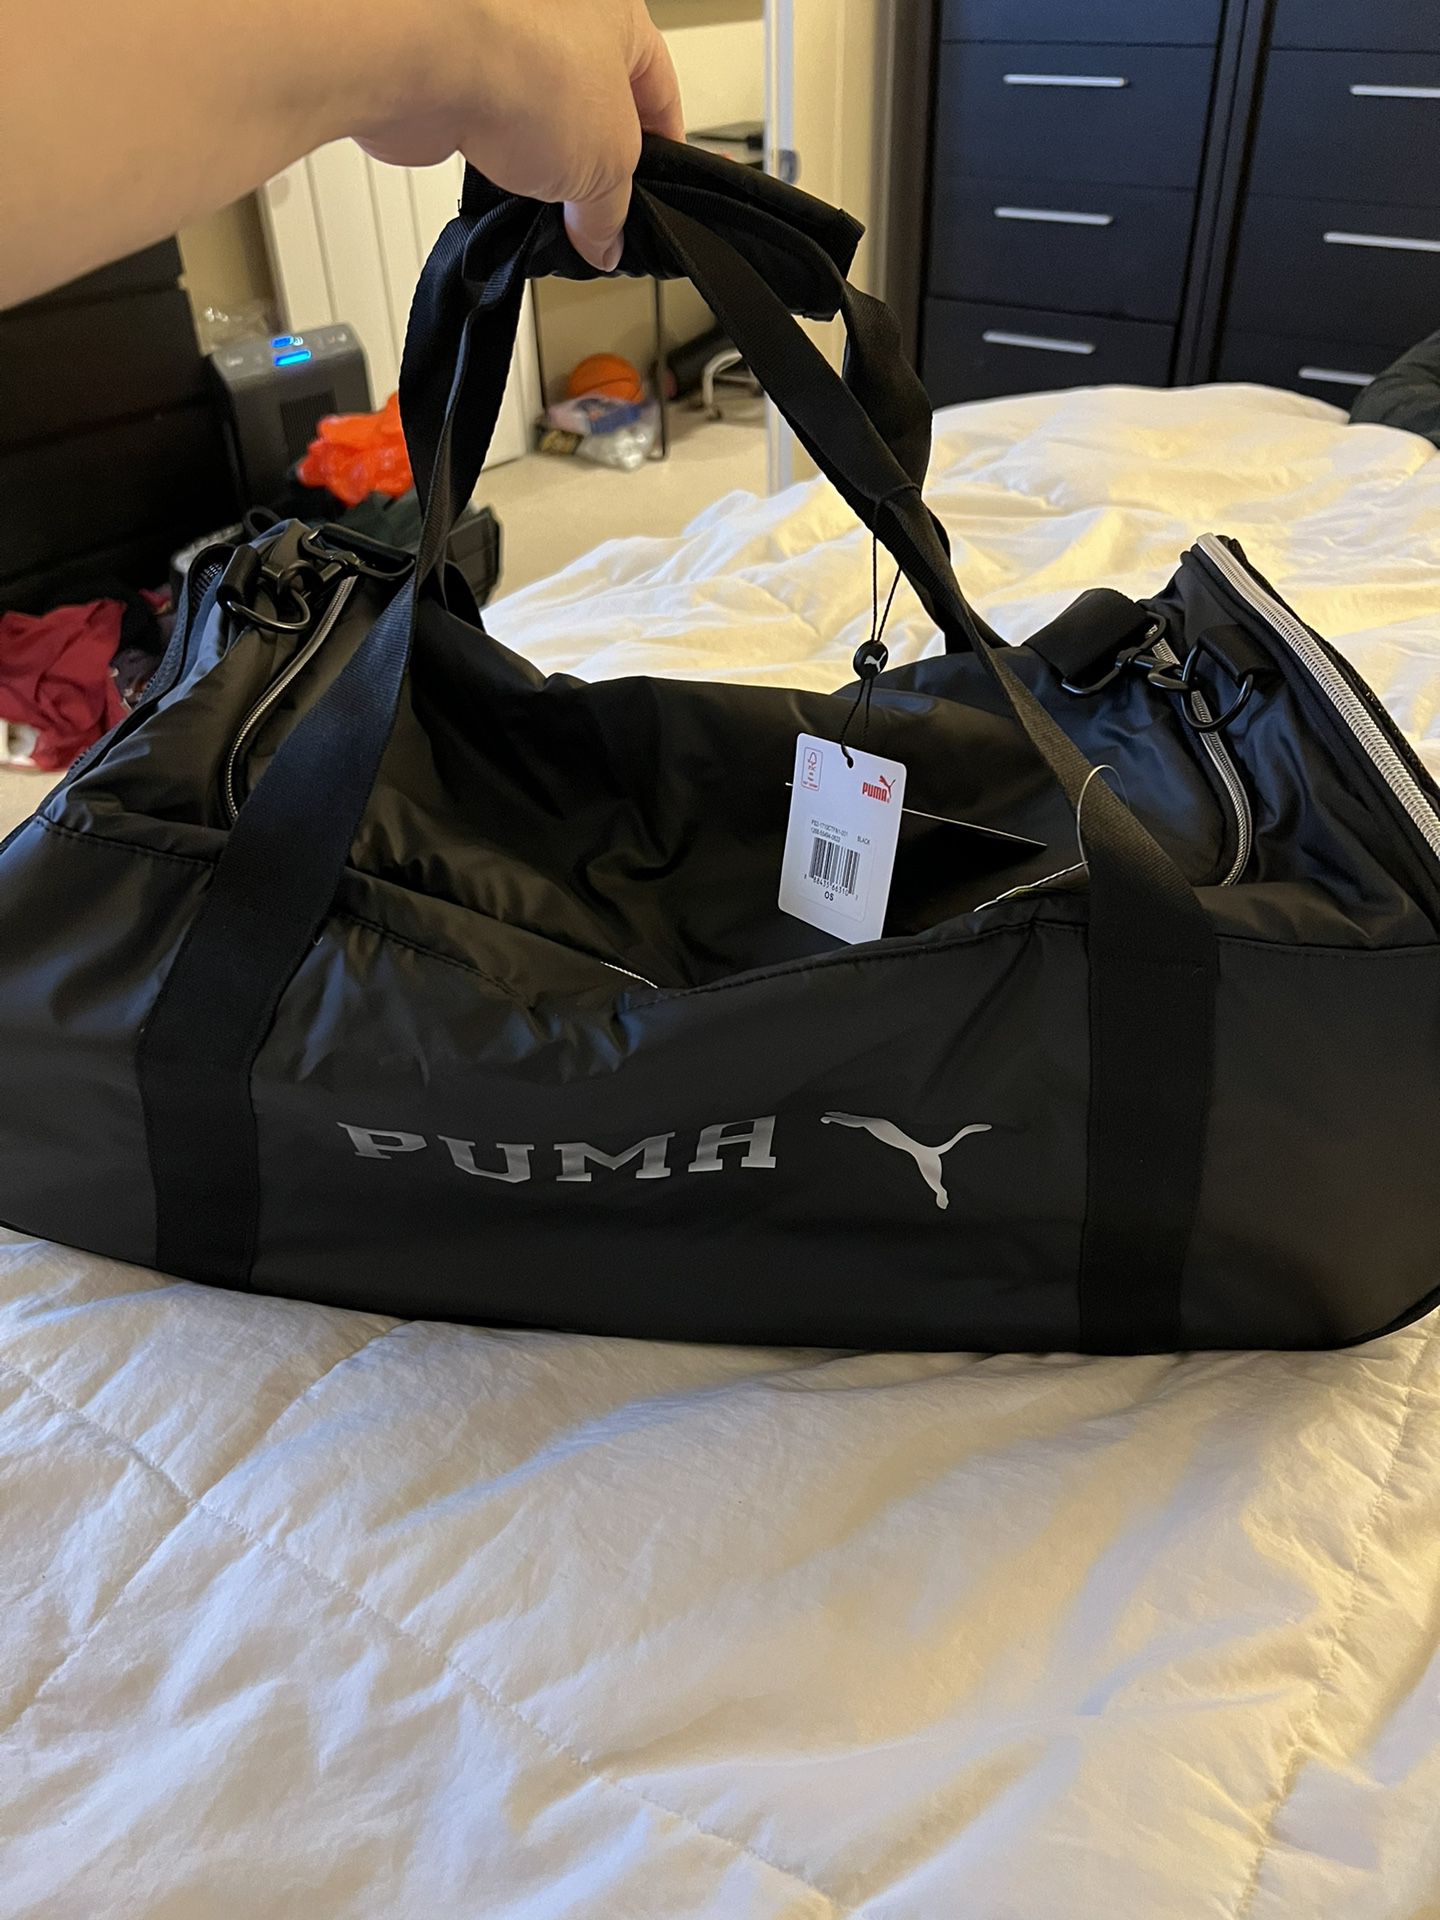 New Puma Duffle Bag